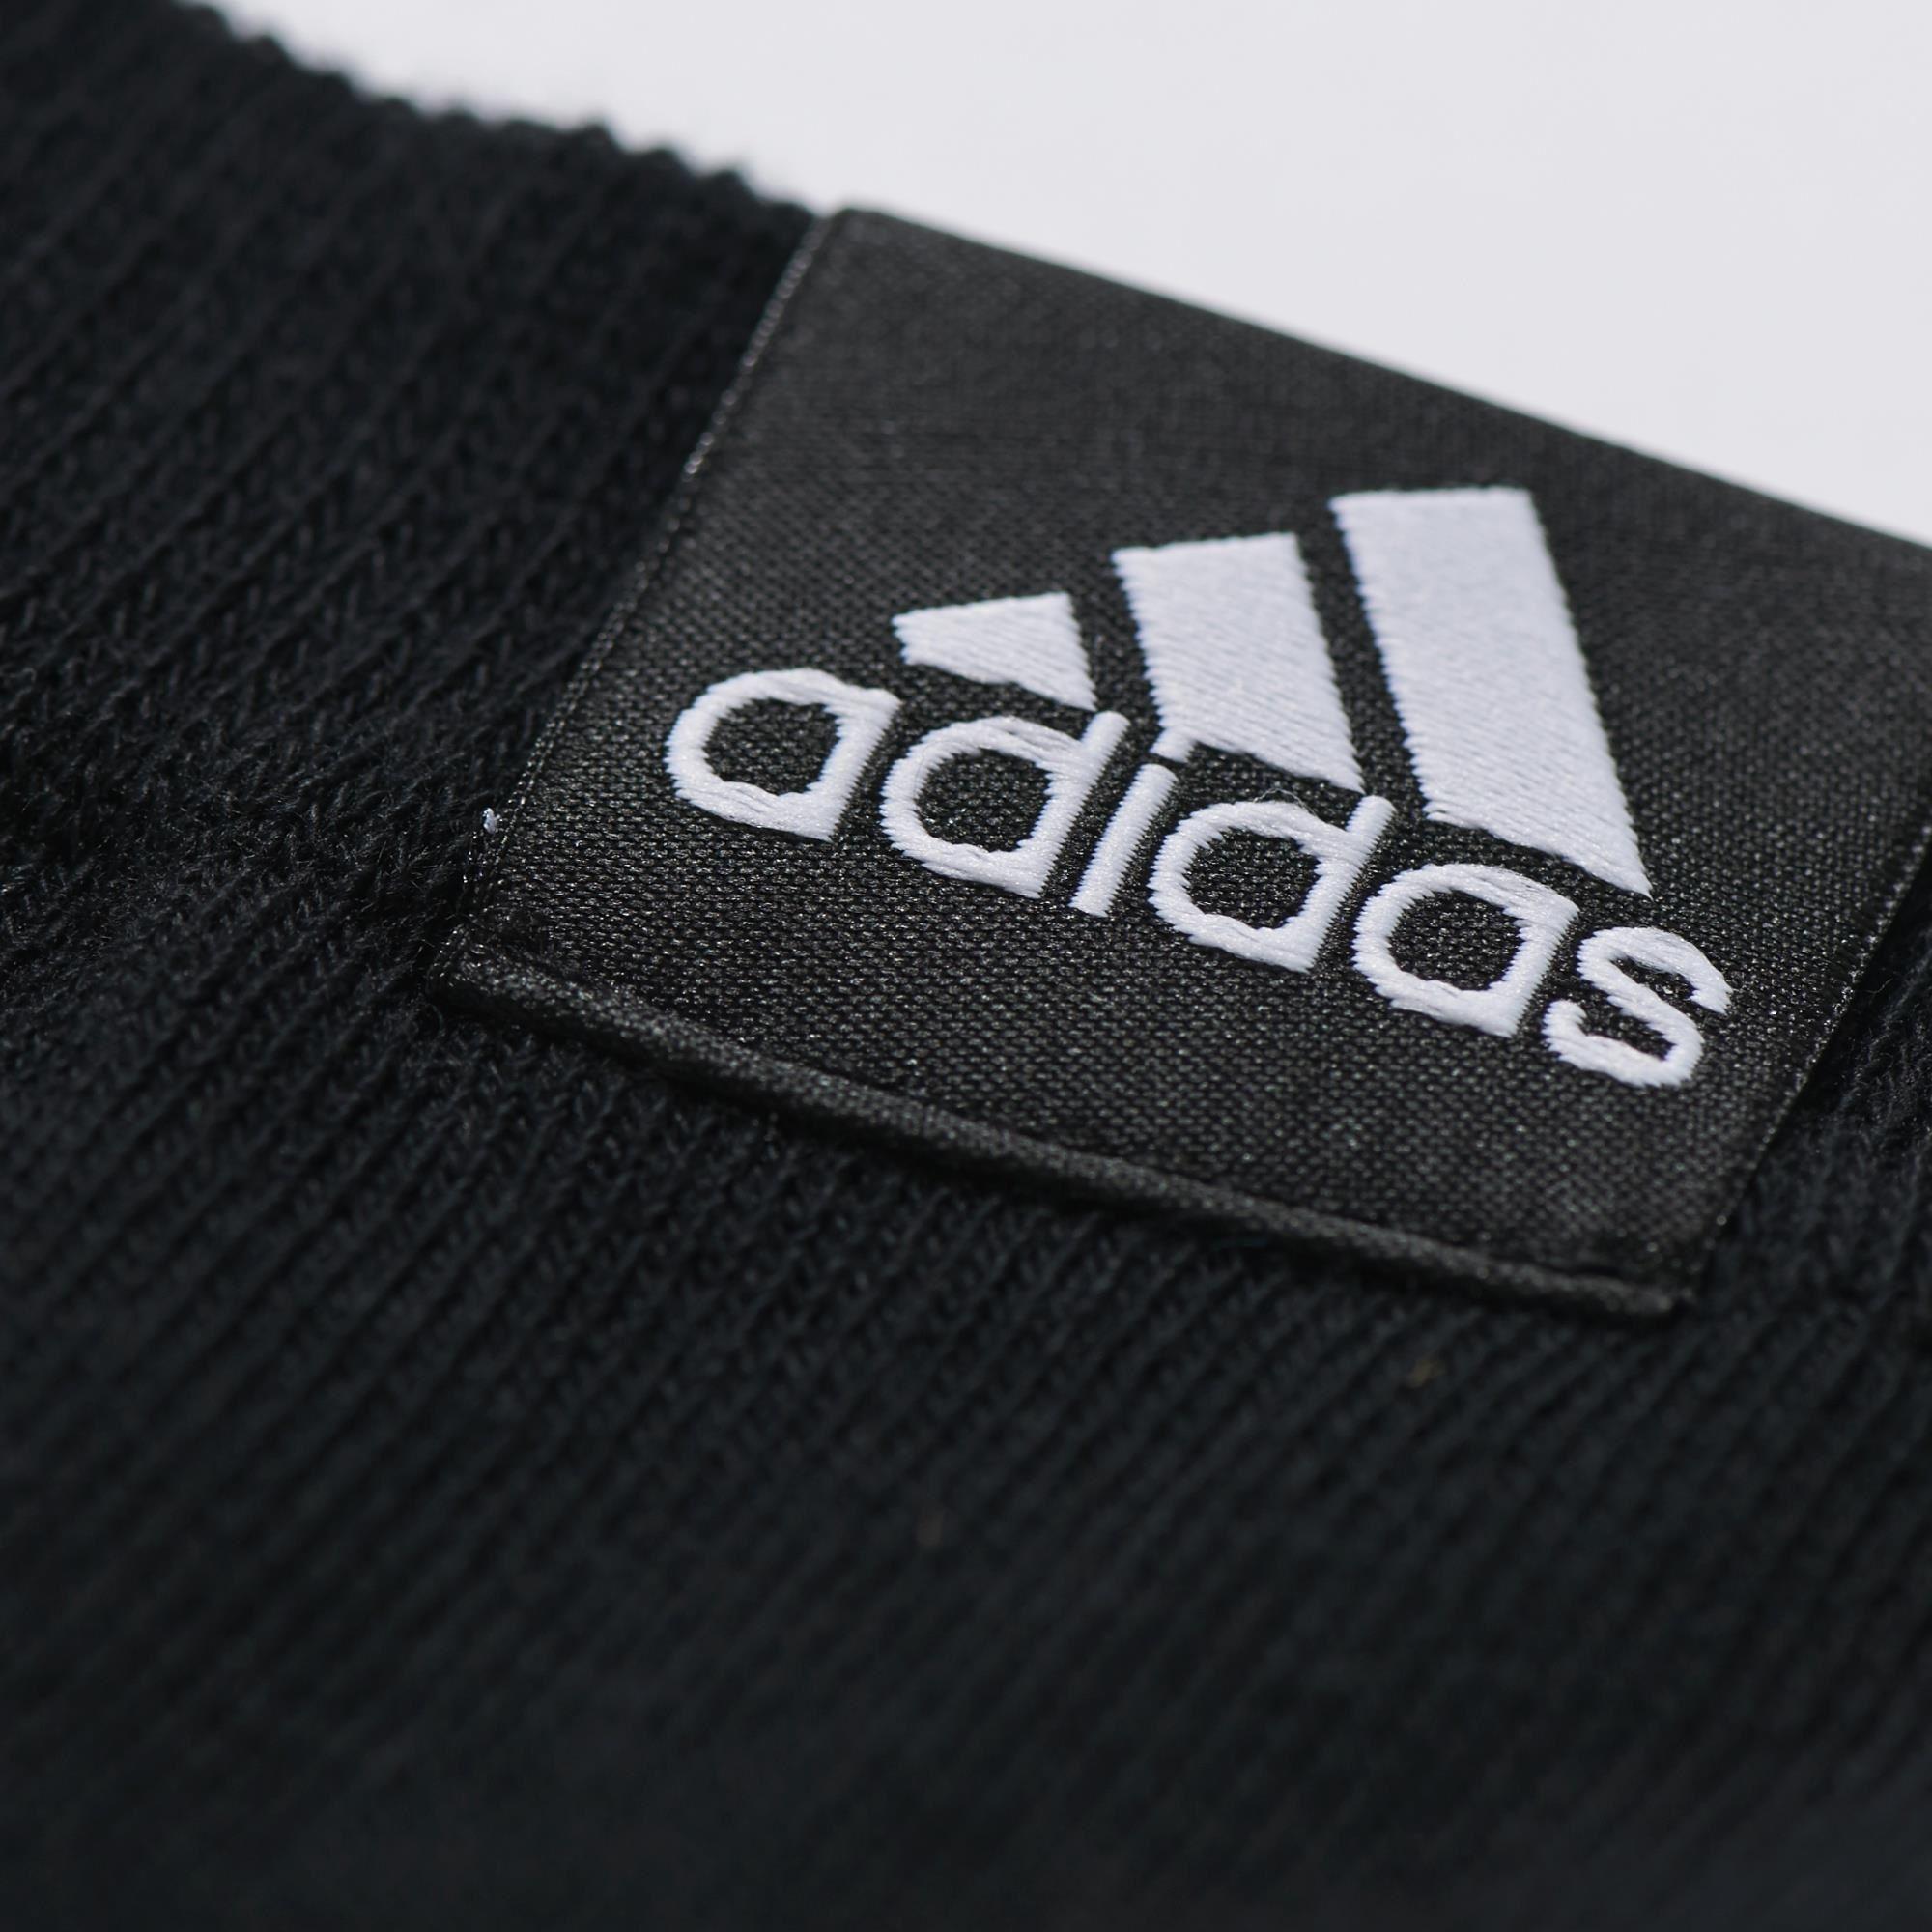 Adidas Ankle Socks (3 Pairs) - Black - Tennisnuts.com